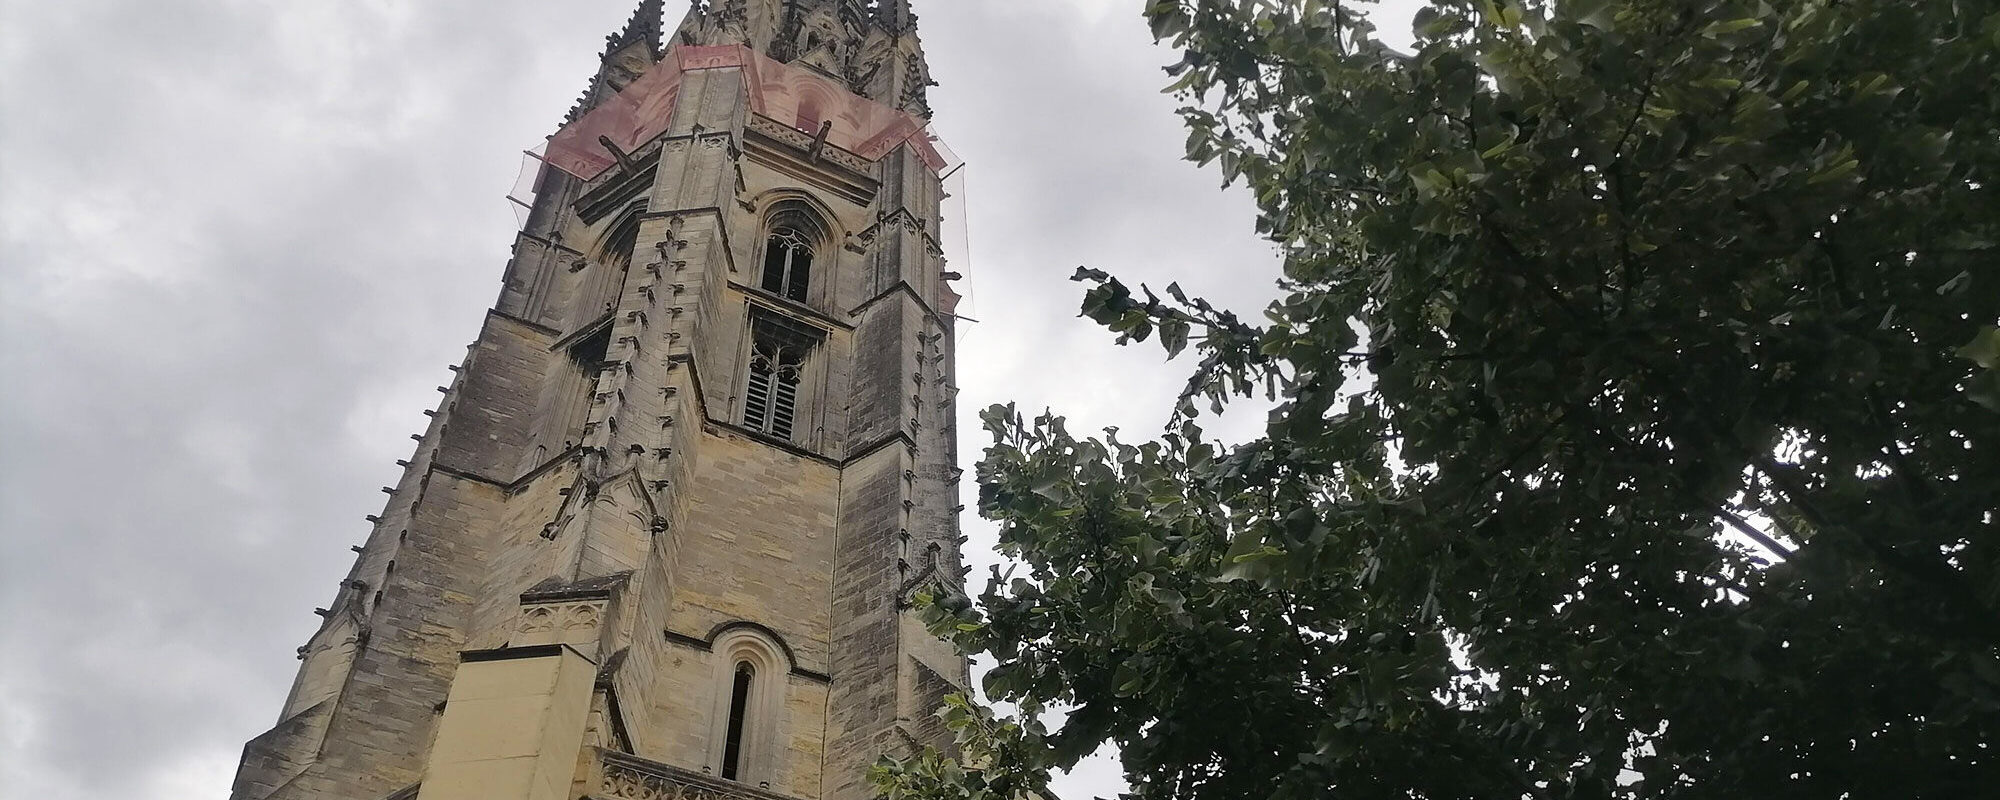 Un gigantesque échafaudage va être installé pour restaurer la flèche Saint-Michel